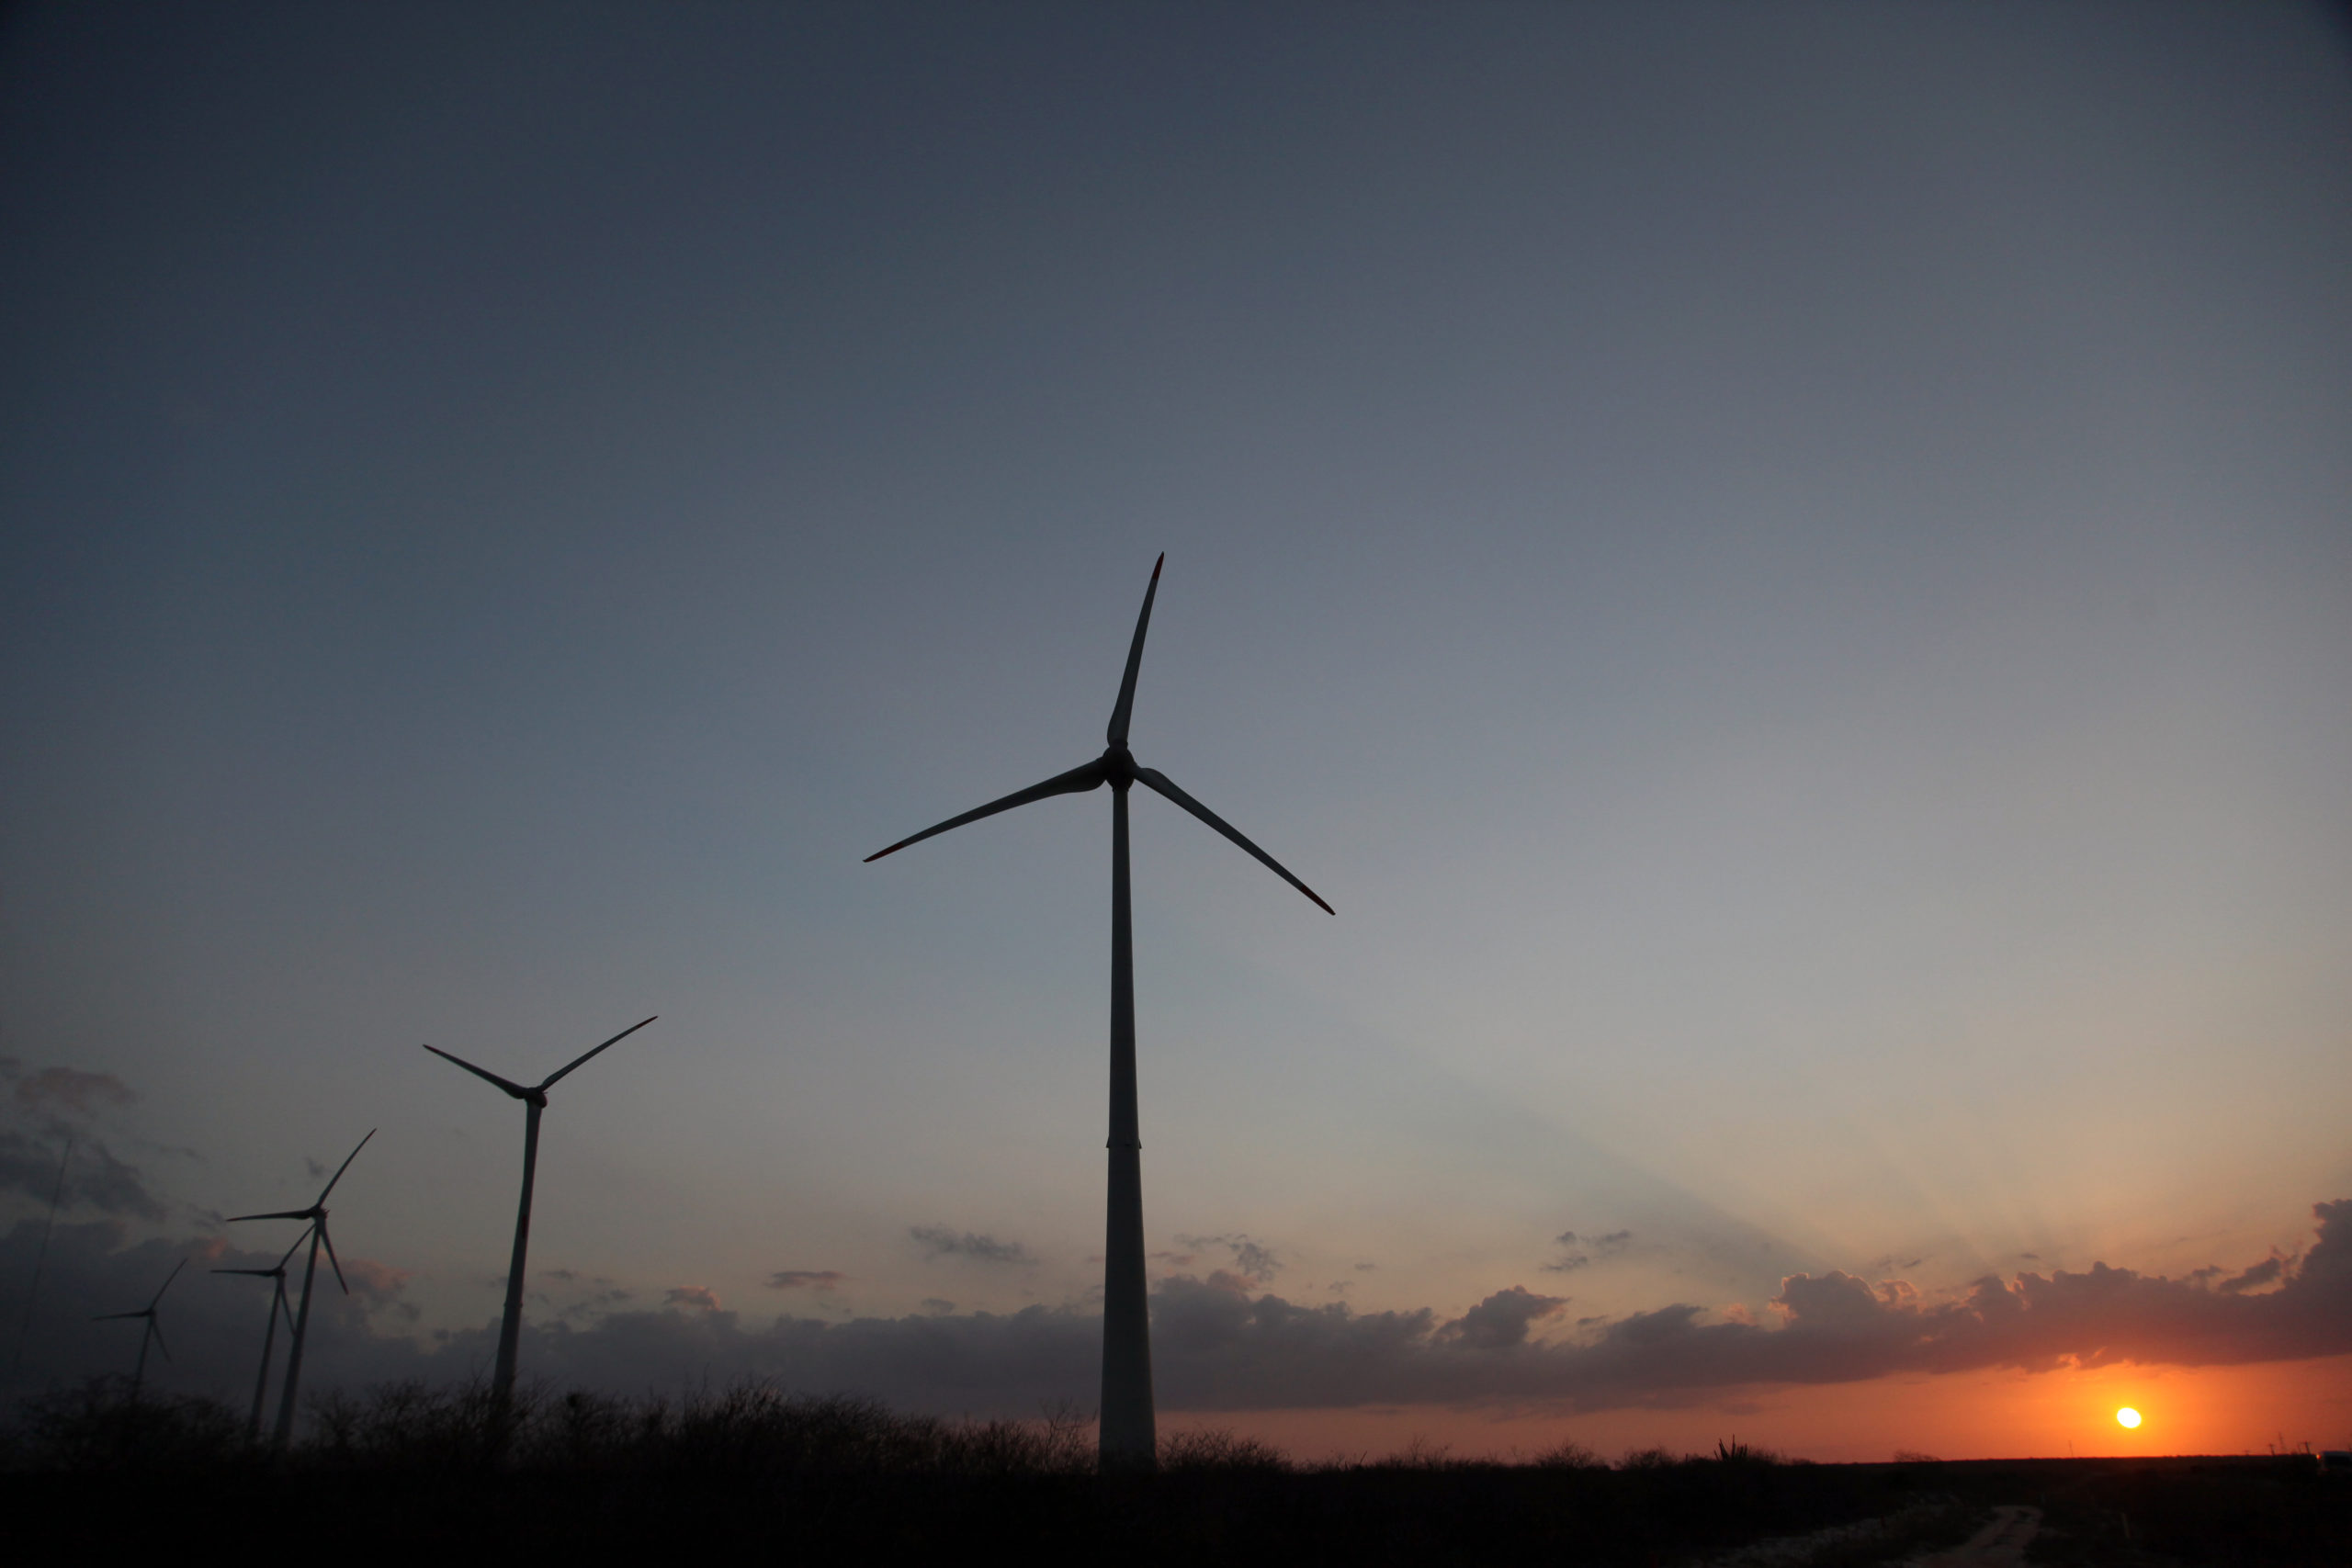 Petrobras e WEG fazem parceria para desenvolver turbina eólica. Na imagem: Turbinas eólicas fotografadas ao anoitecer, à contraluz, com sol se pondo ao fundo (Foto: Divulgação Petrobras)